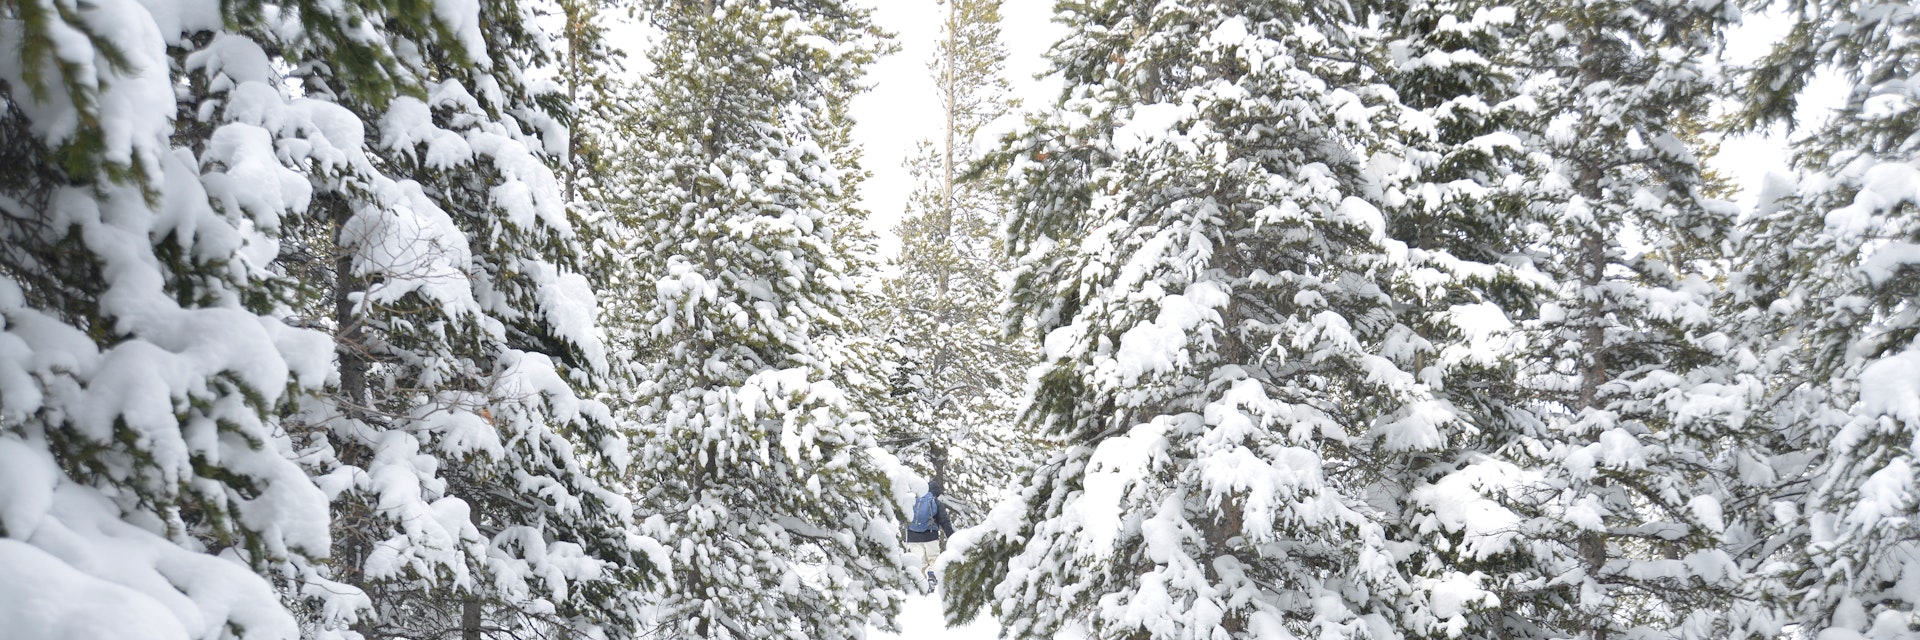 Snowshoeing, Estes, Colorado